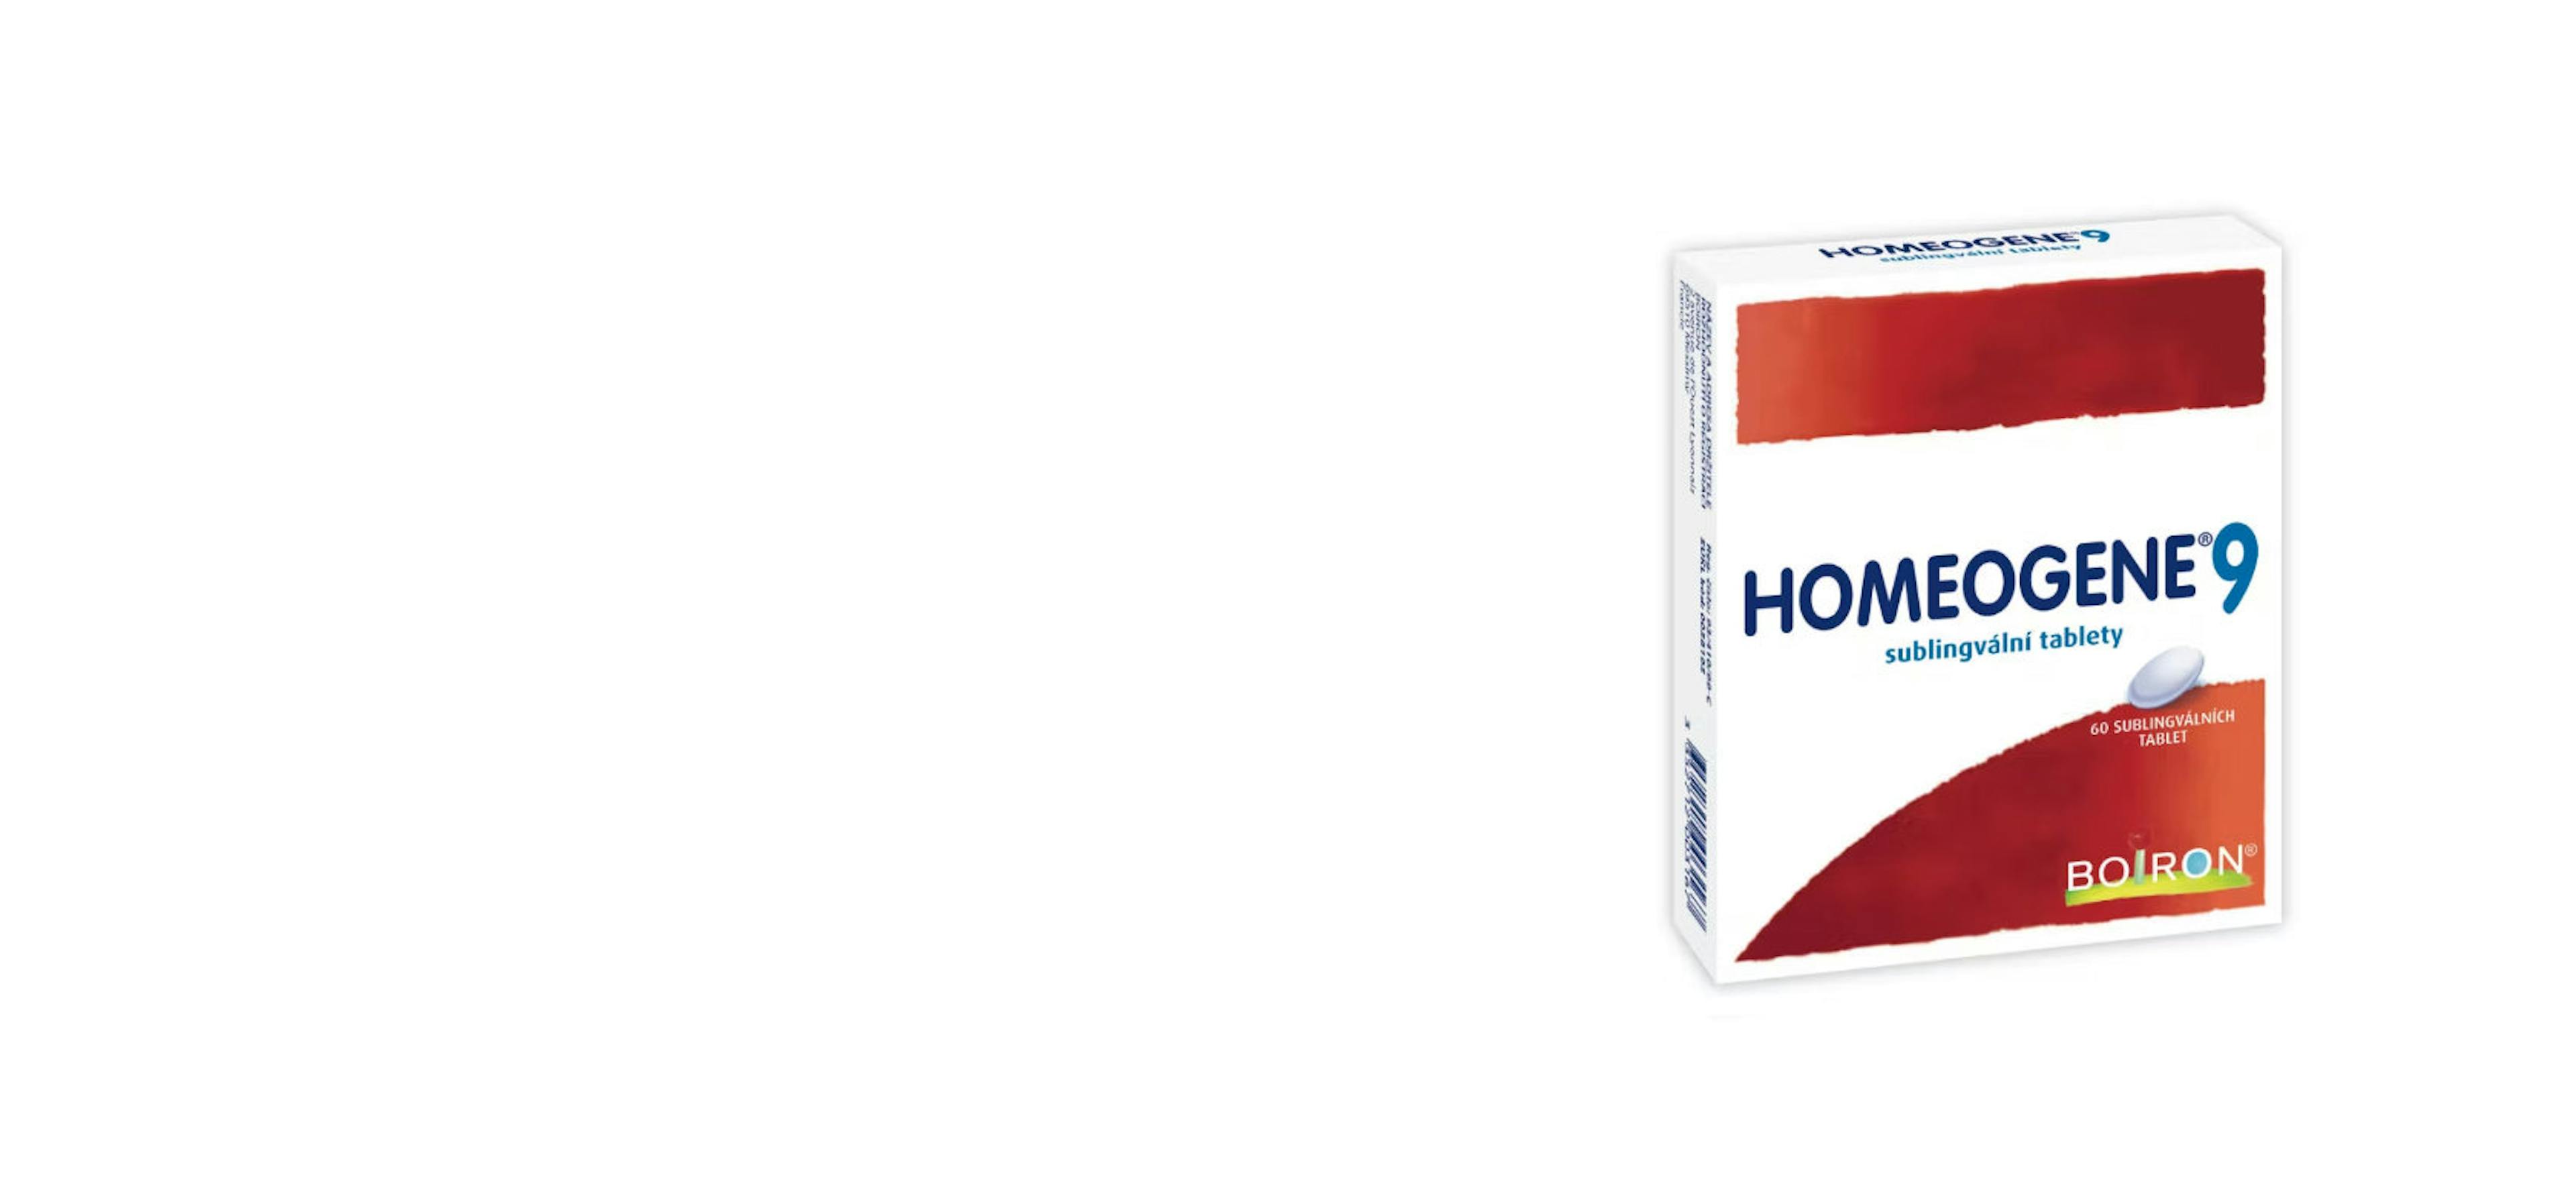 Homeogene 9 krabička